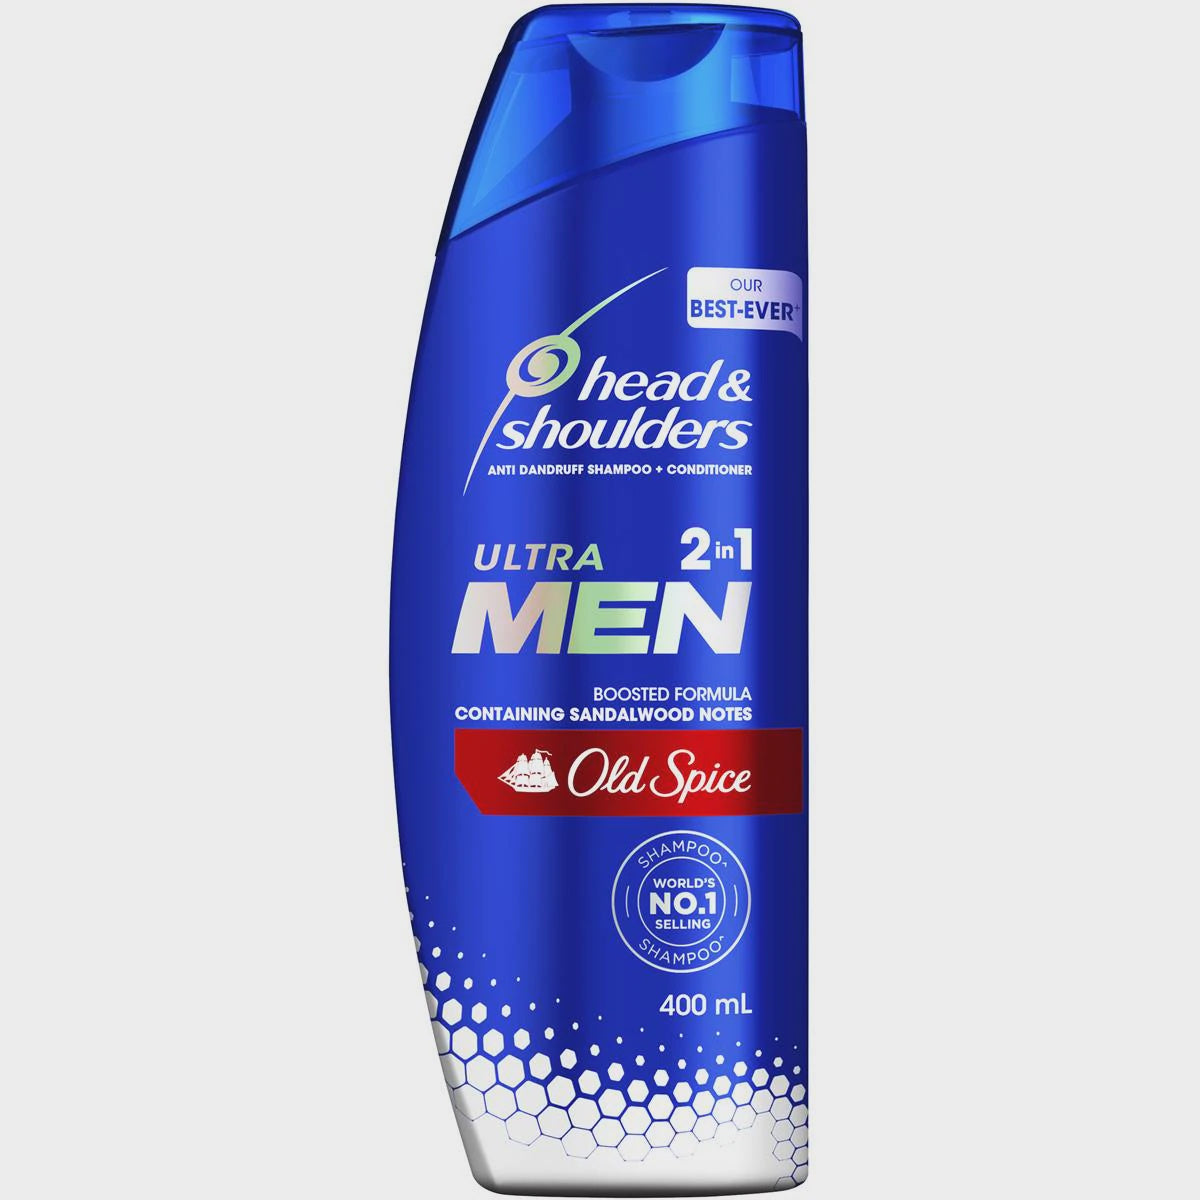 Head & Shoulders Shampoo Ultra Men Old Spice 400Ml